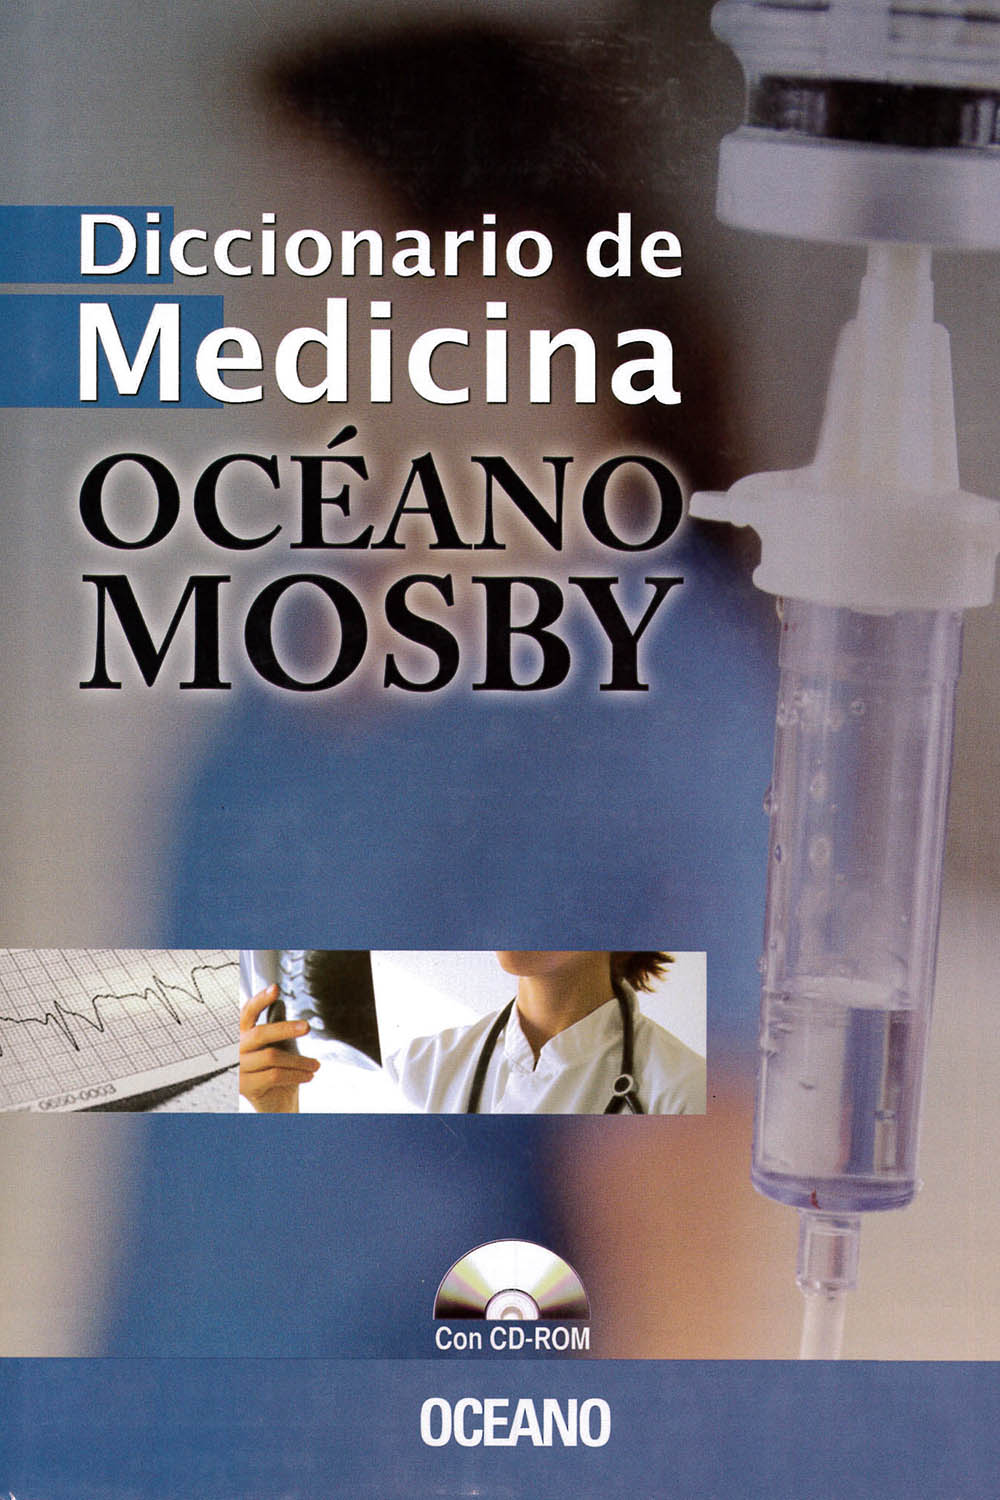 20 / 26 - R121 D52 Diccionario de Medicina - OCEANO / Mosby, España 1994